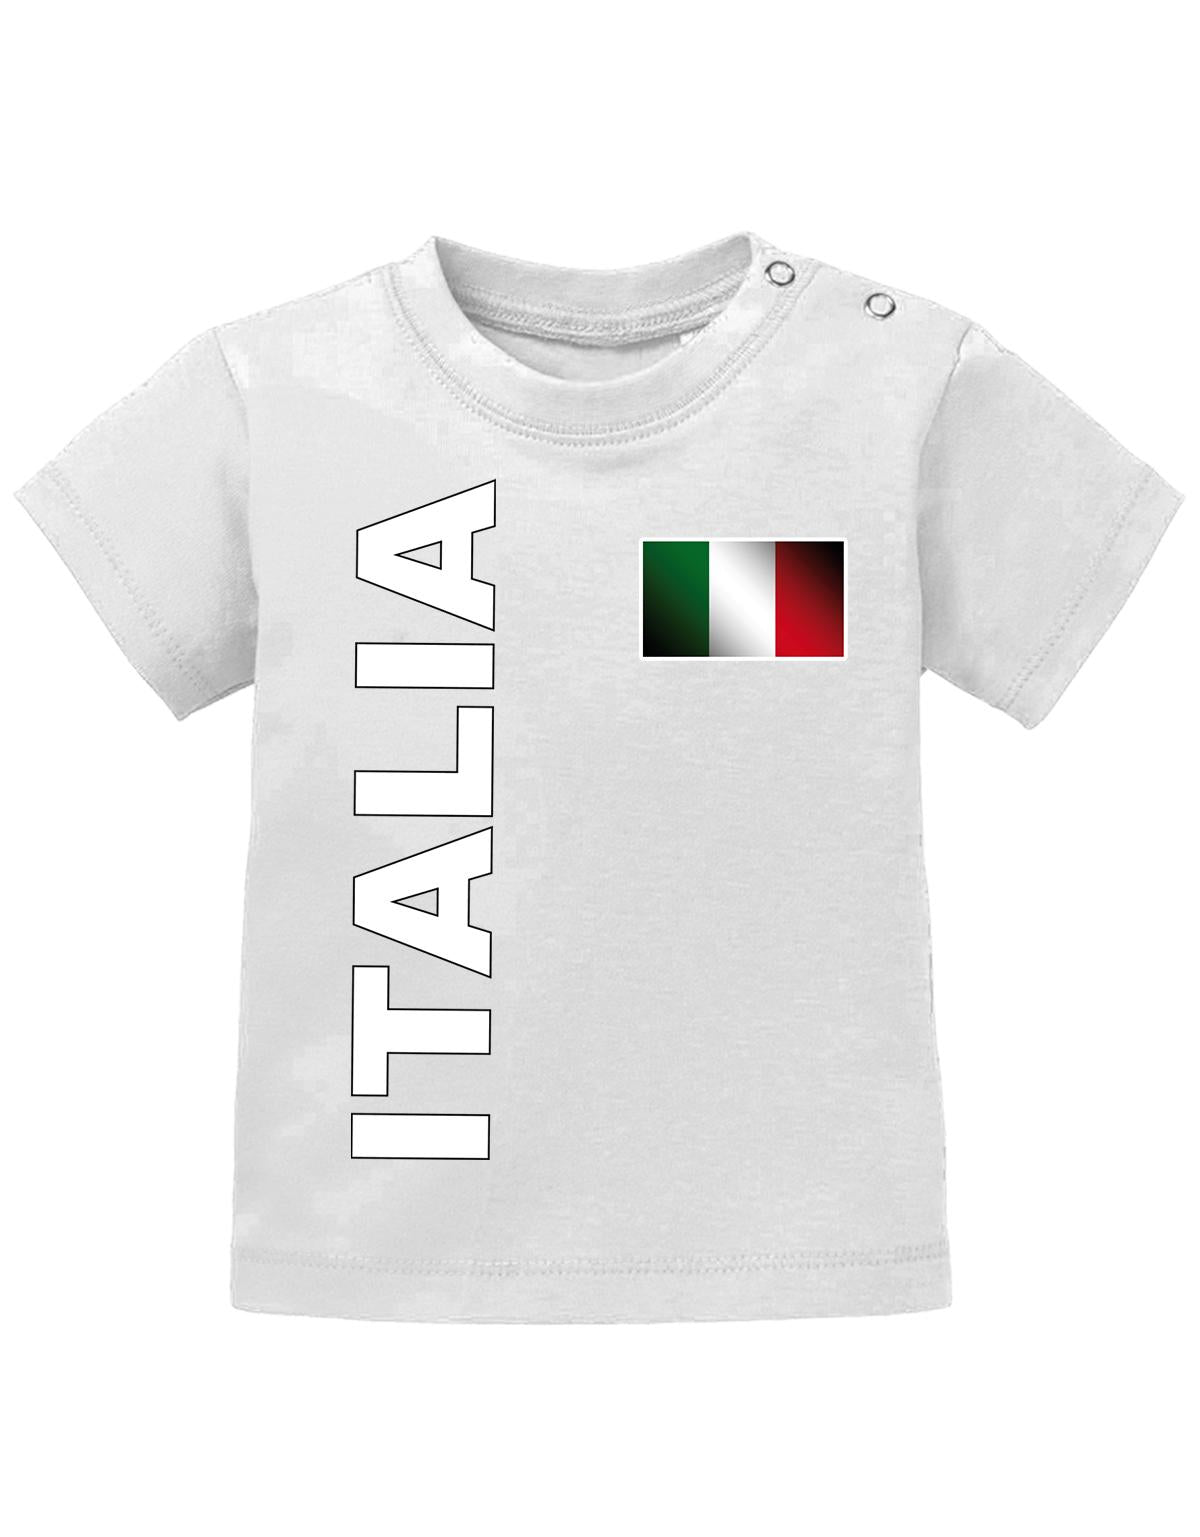 Italien T Shirt für Junge und Mädchen. Italienische Fahne am Herzen Italia als Schriftzug.